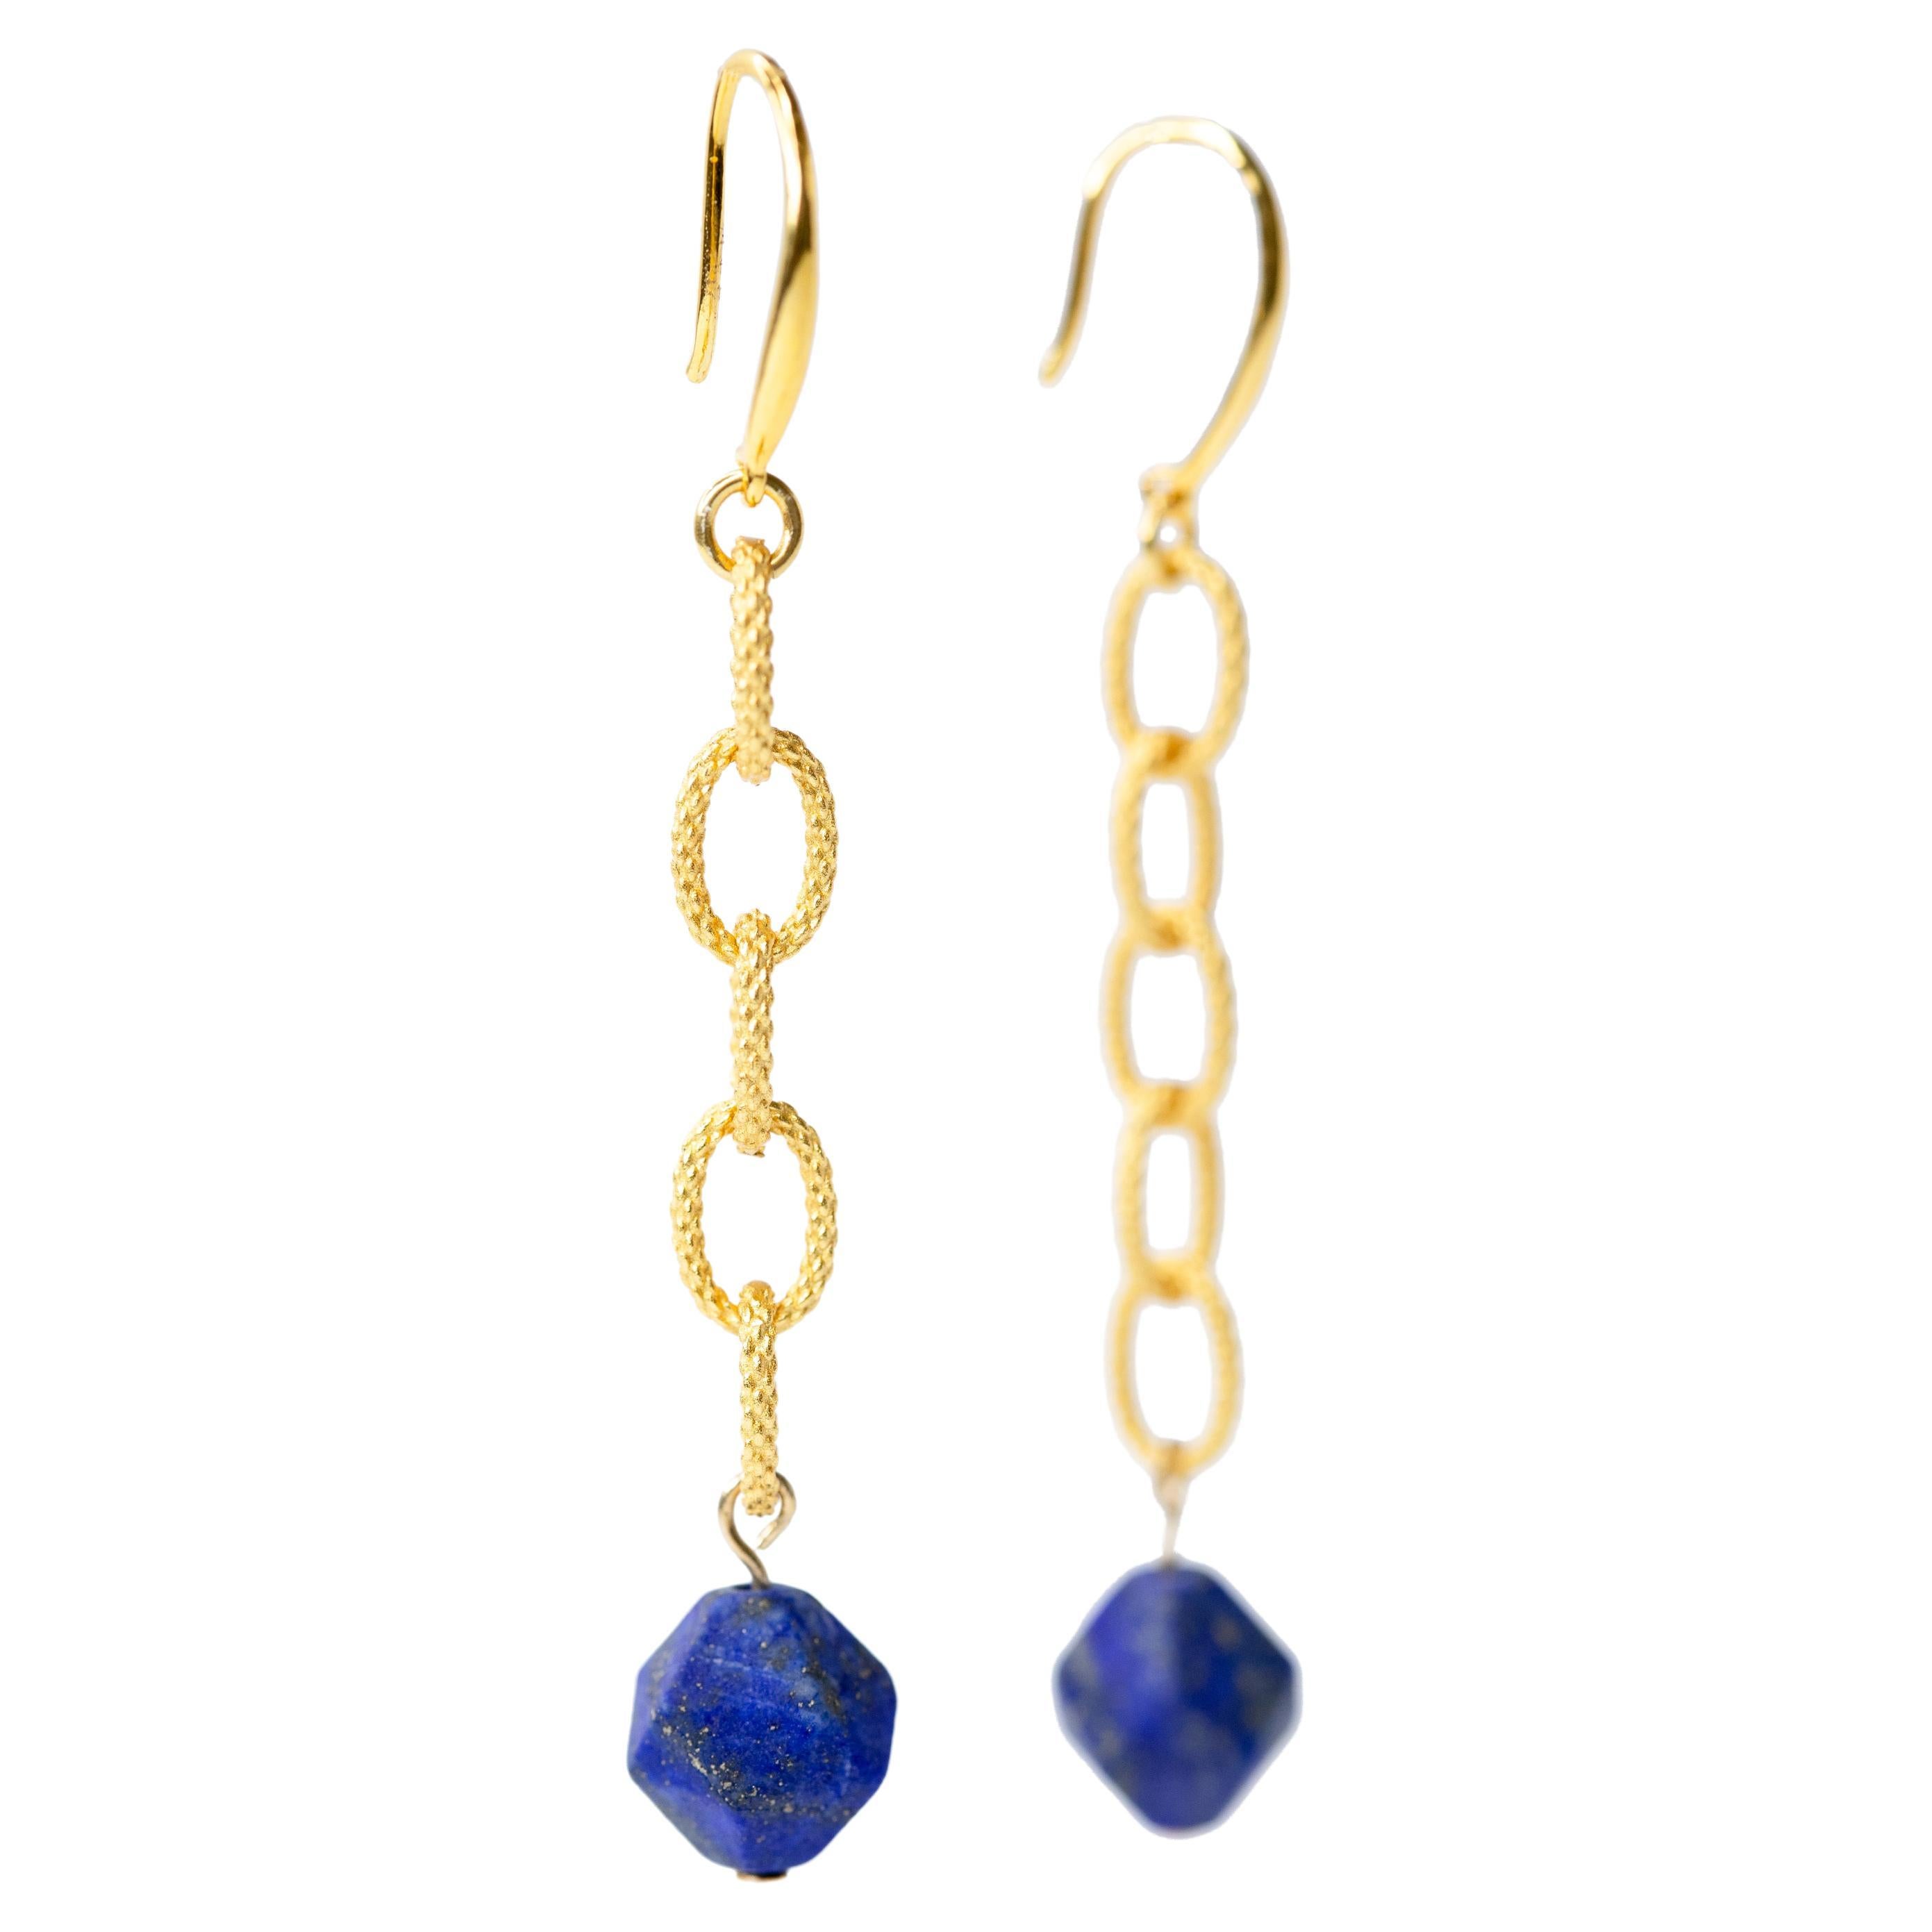 Lapis Lazuli Earring - Blue Madrid Earrings by Bombyx House